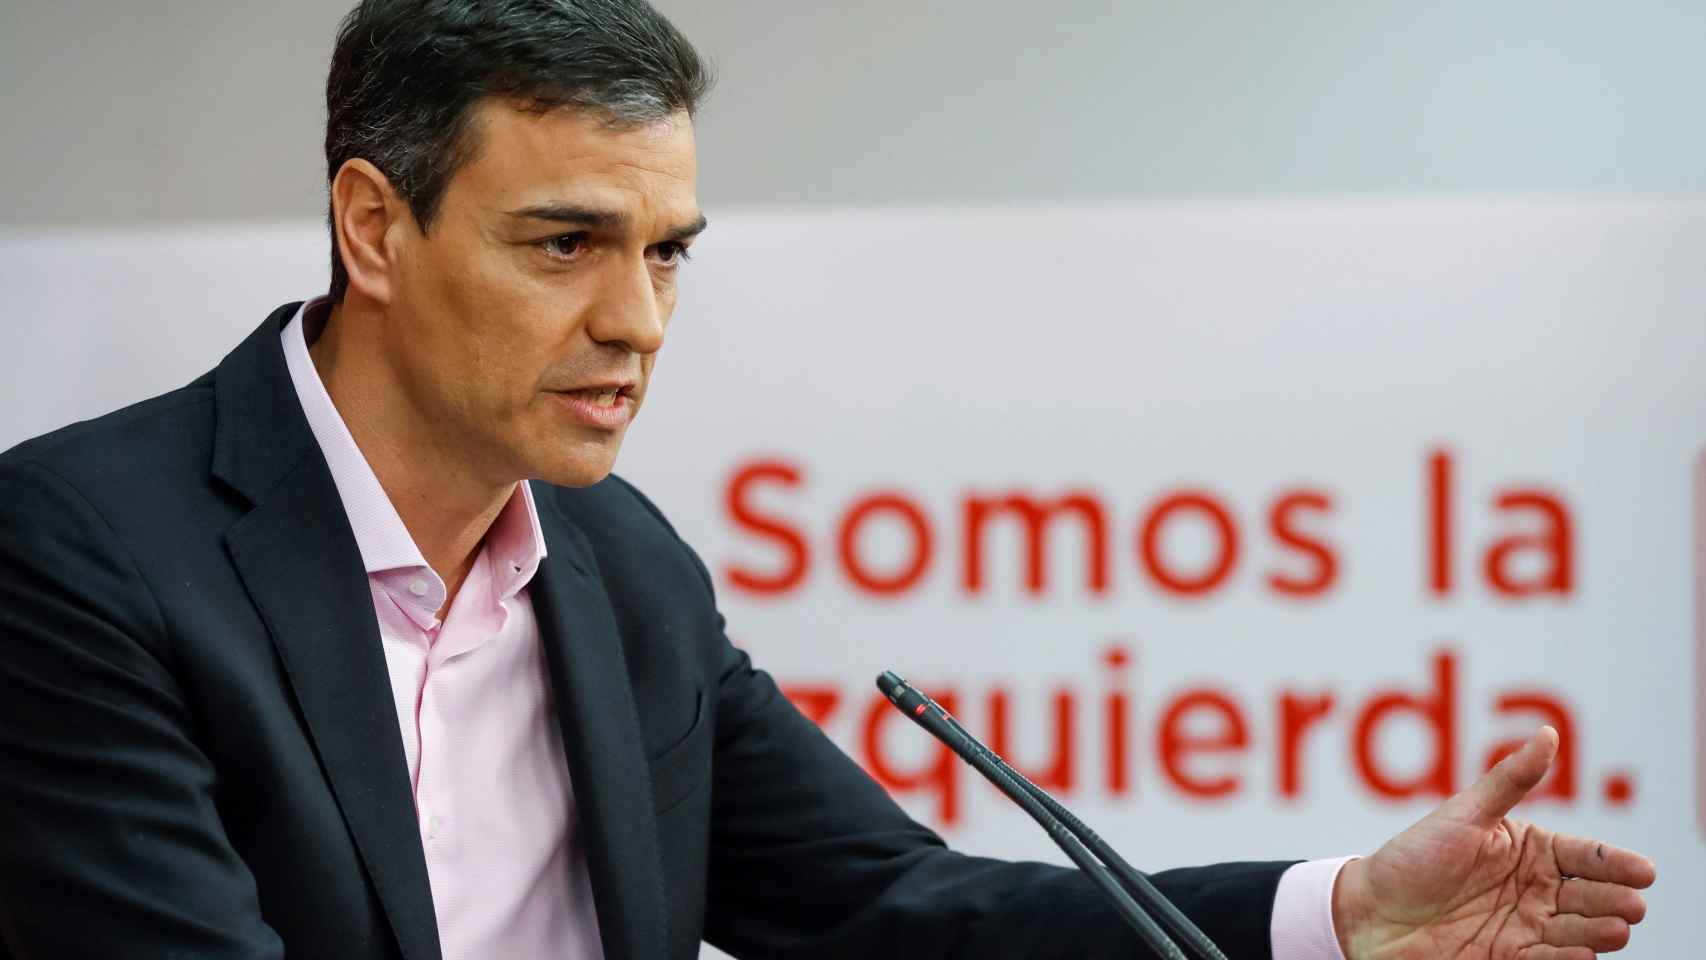 Pedro Sánchez, líder del PSOE, rechaza la propuesta de presupuestos del PP y Cs / EFE